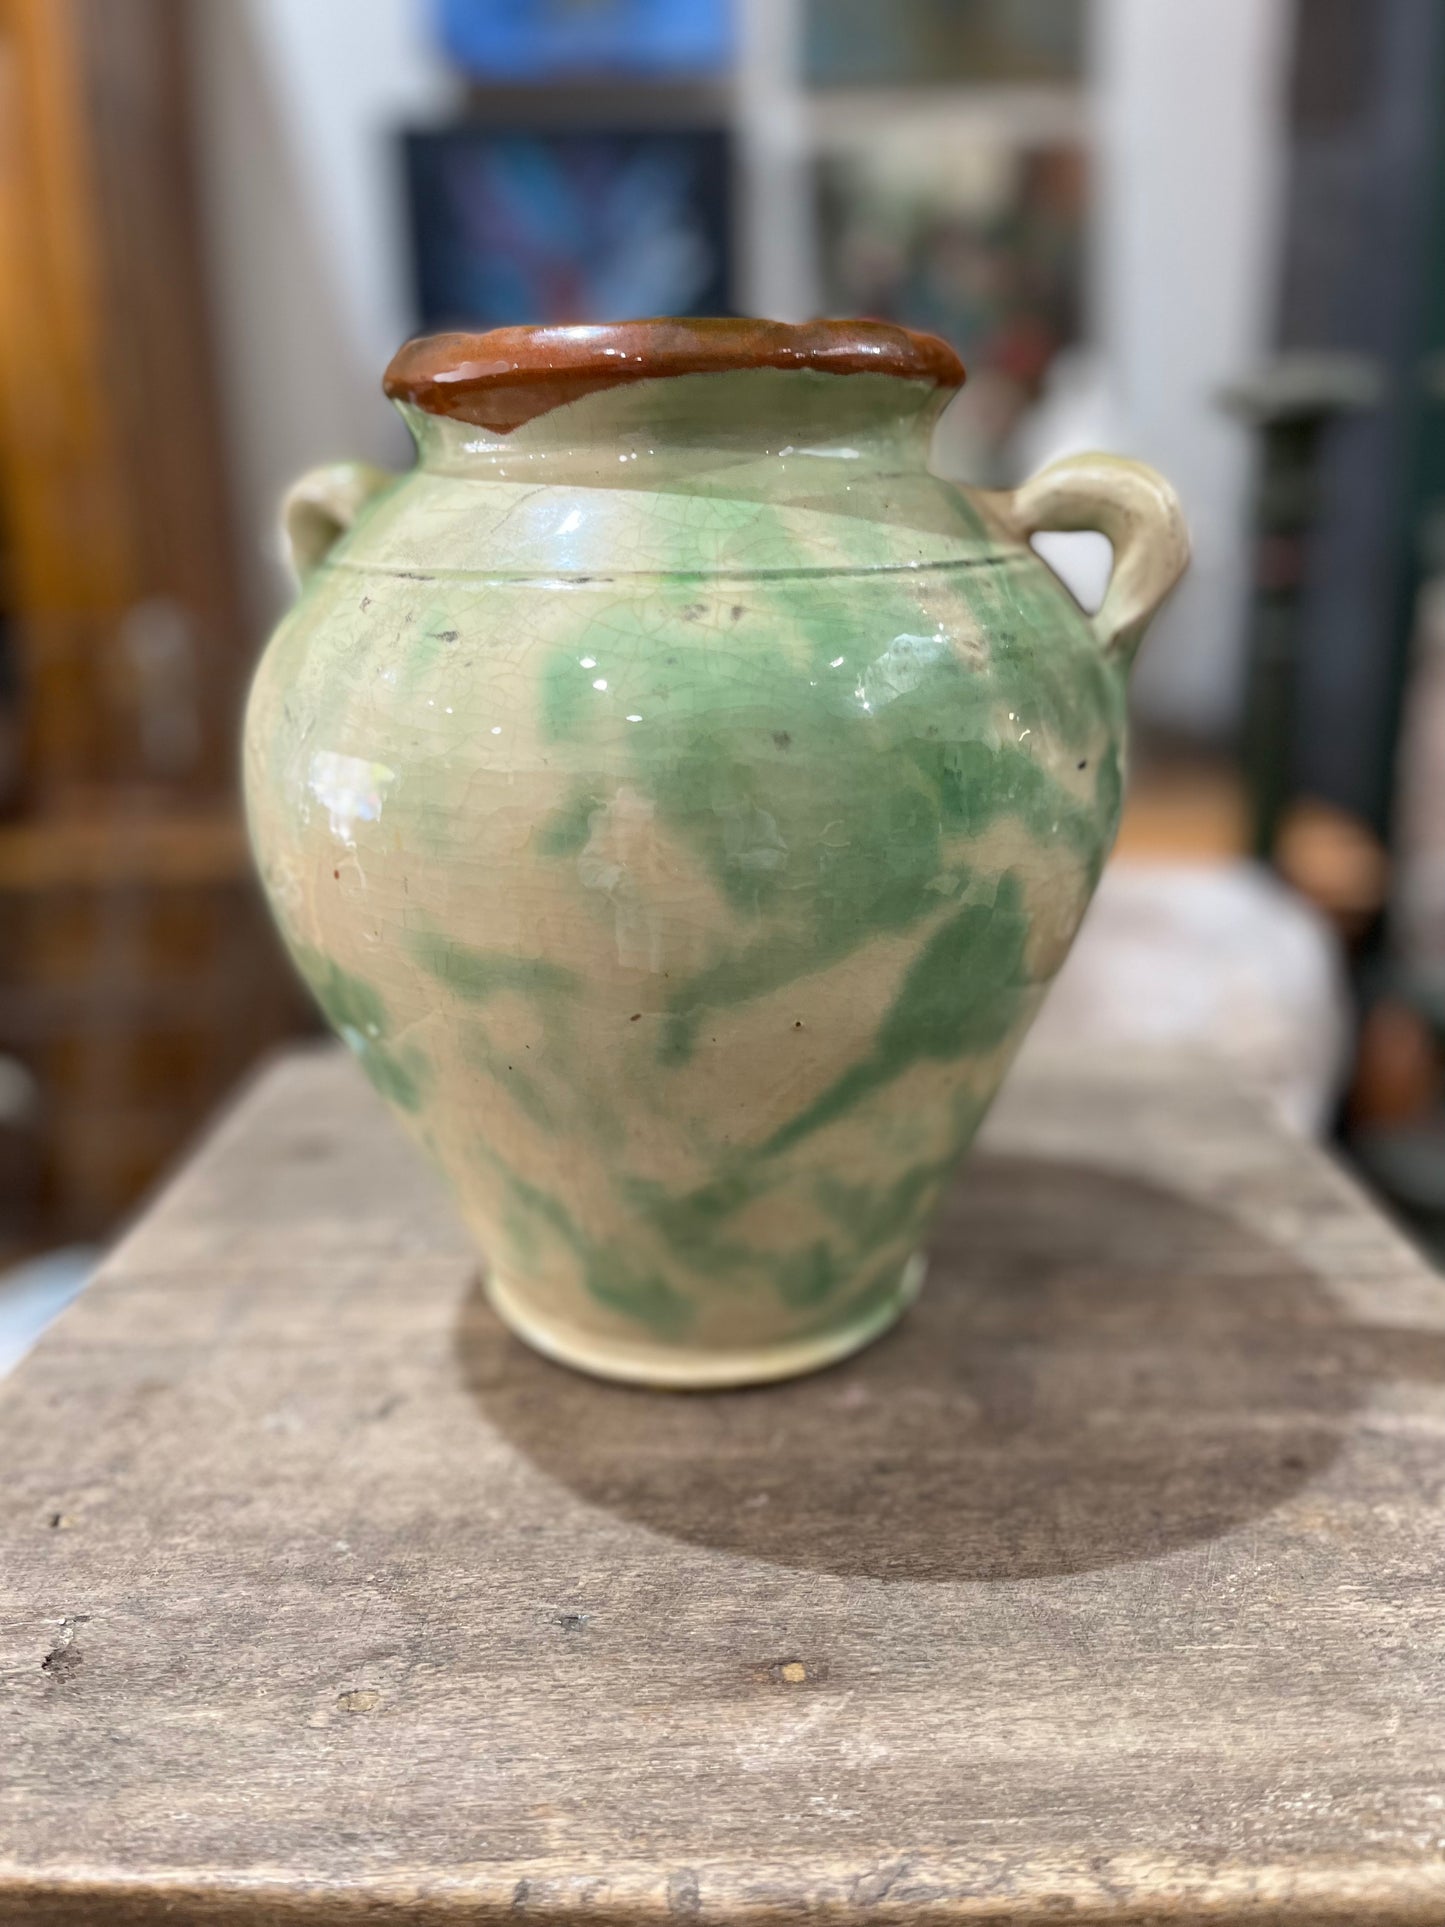 Pottery confit pot